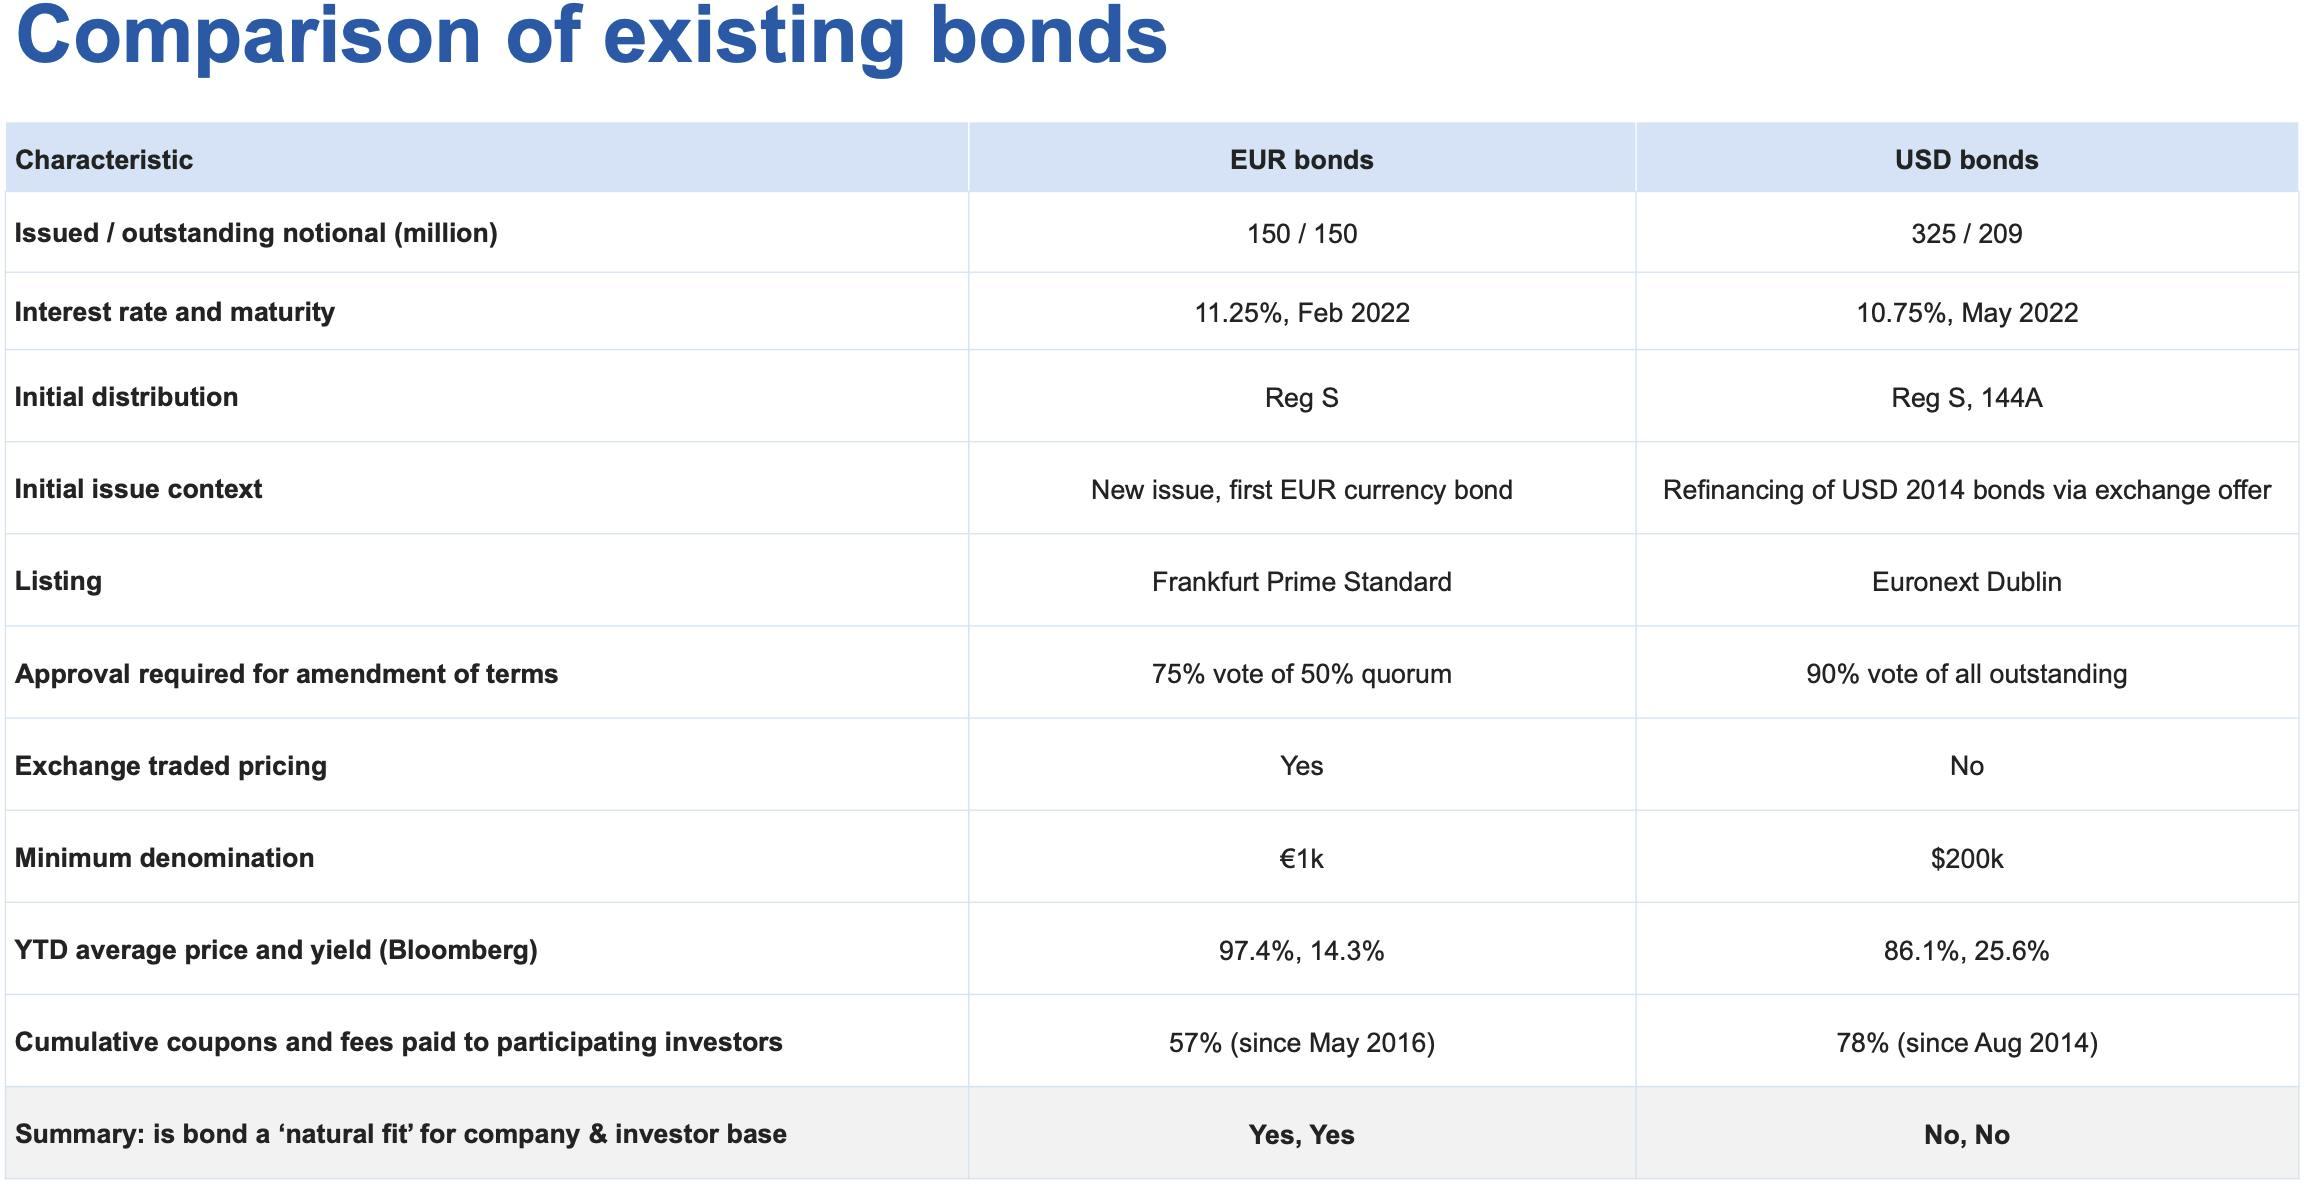 Comparison of existing bonds